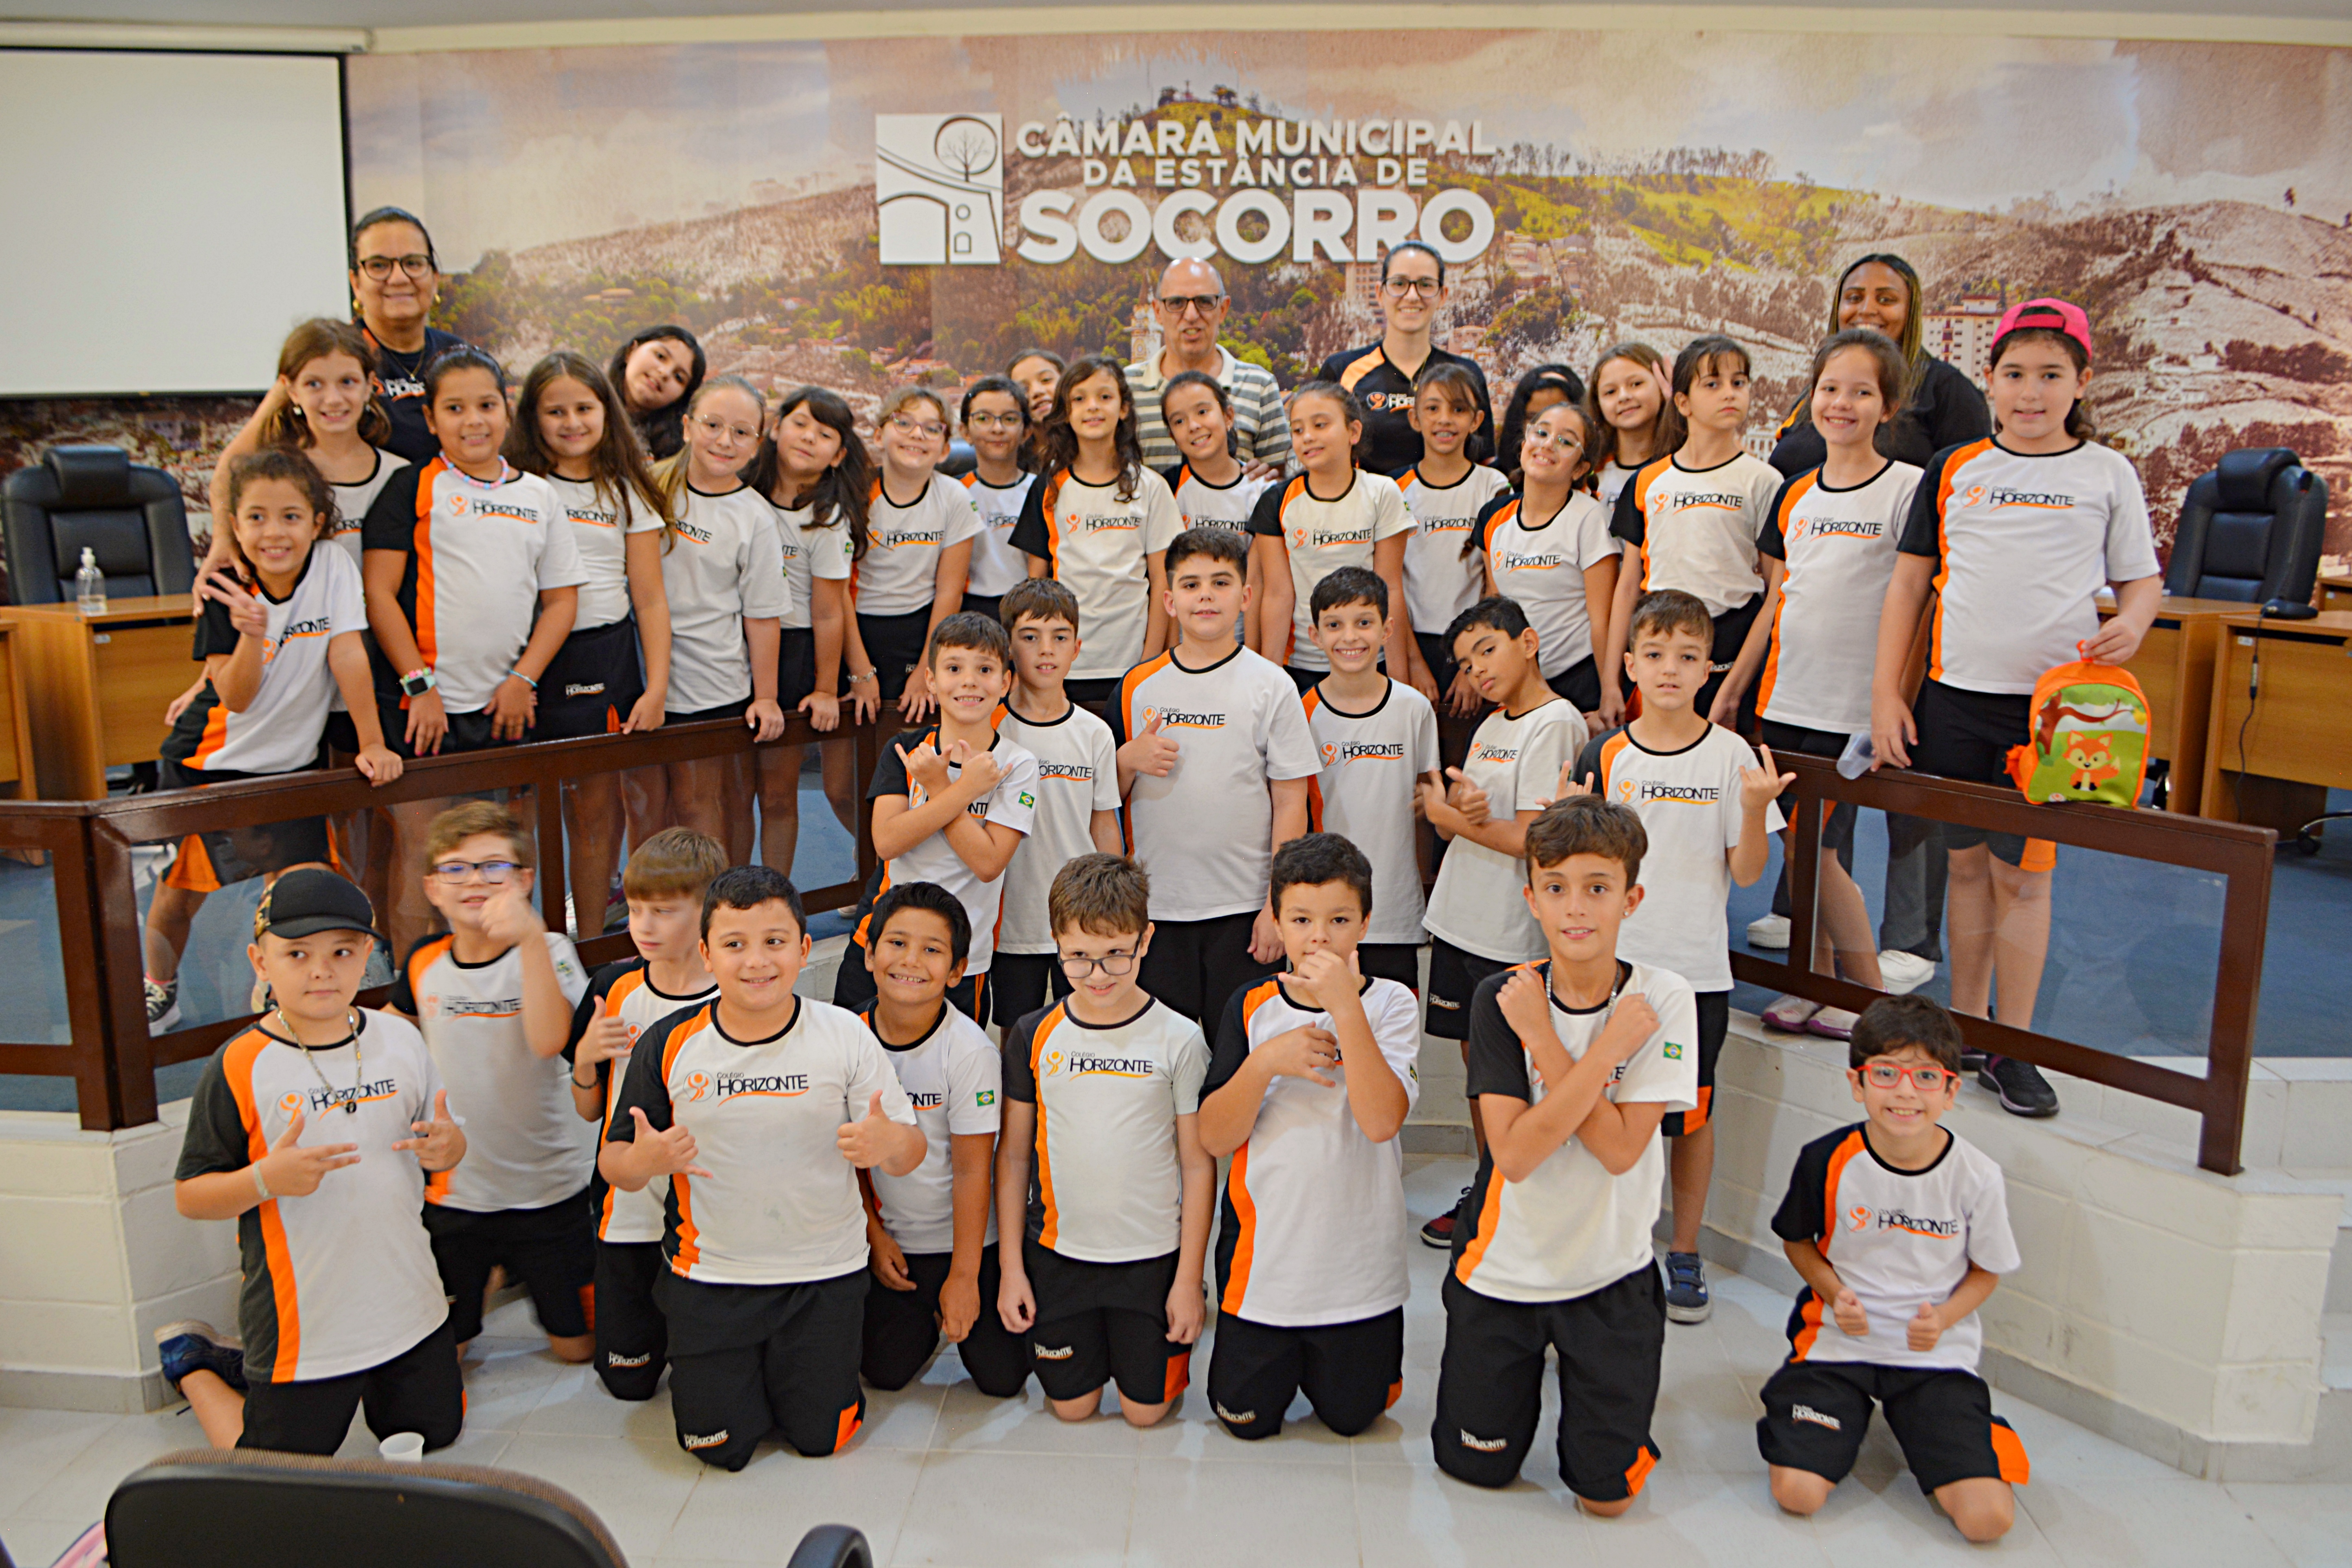 Câmara Municipal recebe visita dos alunos do Colégio Horizonte